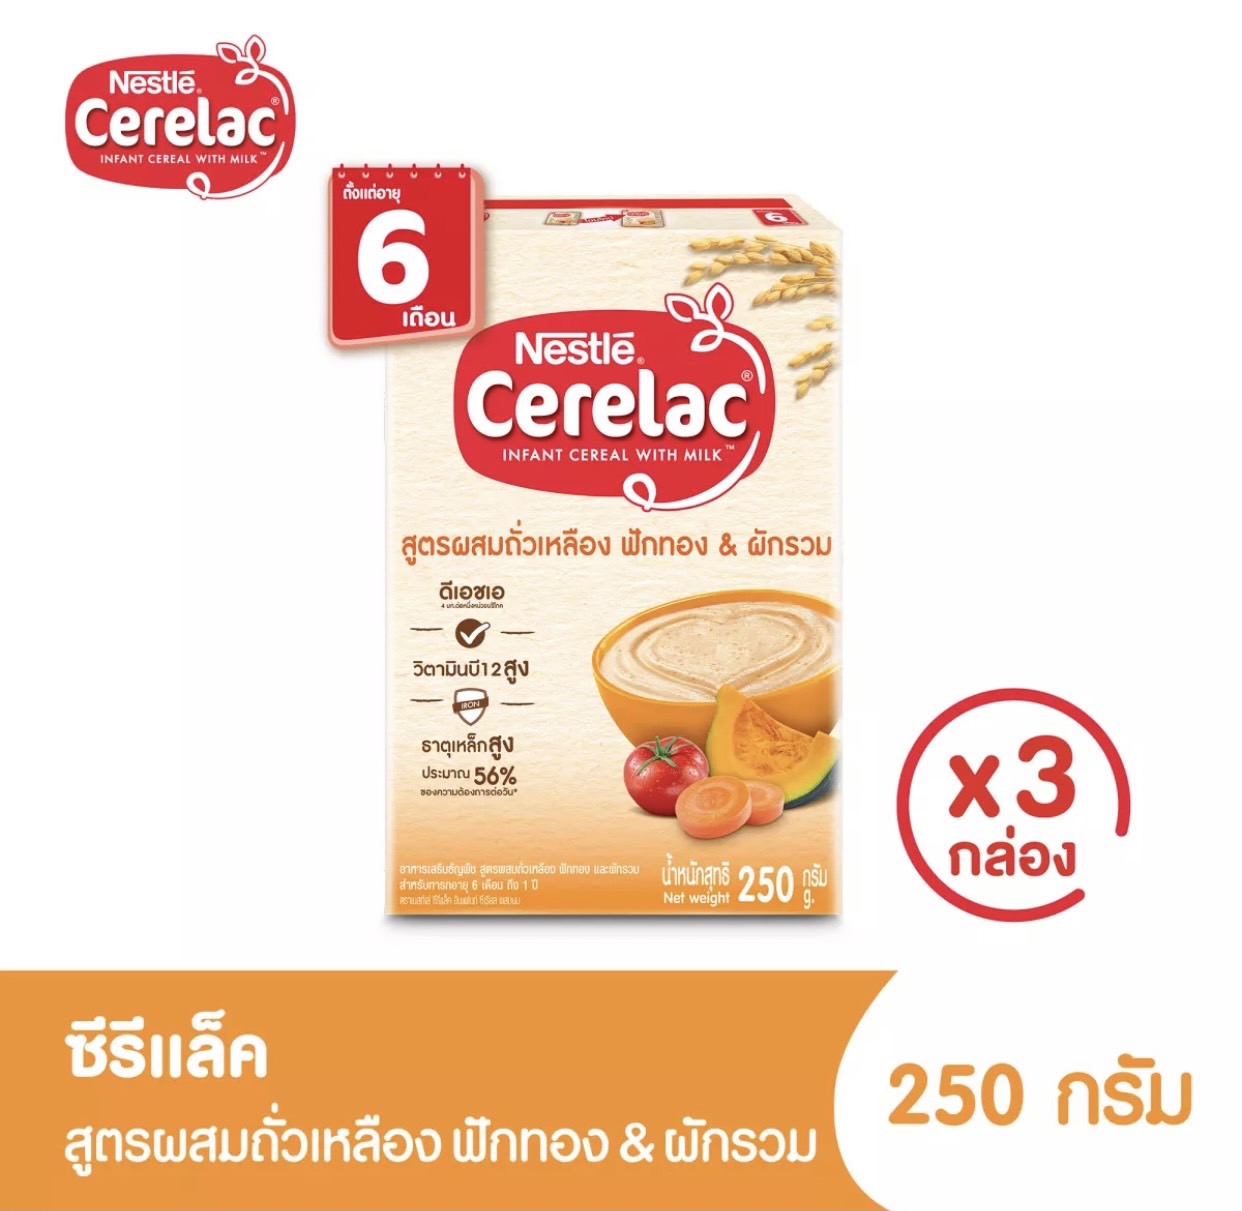 ภาพประกอบคำอธิบาย CERELAC ซีรีแล็ค อาหารเสริมสำหรับเด็ก ตั้งแต่อายุ 6 เดือนขึ้นไป ขนาด 200/250 มล แพ็ค 3 กล่อง